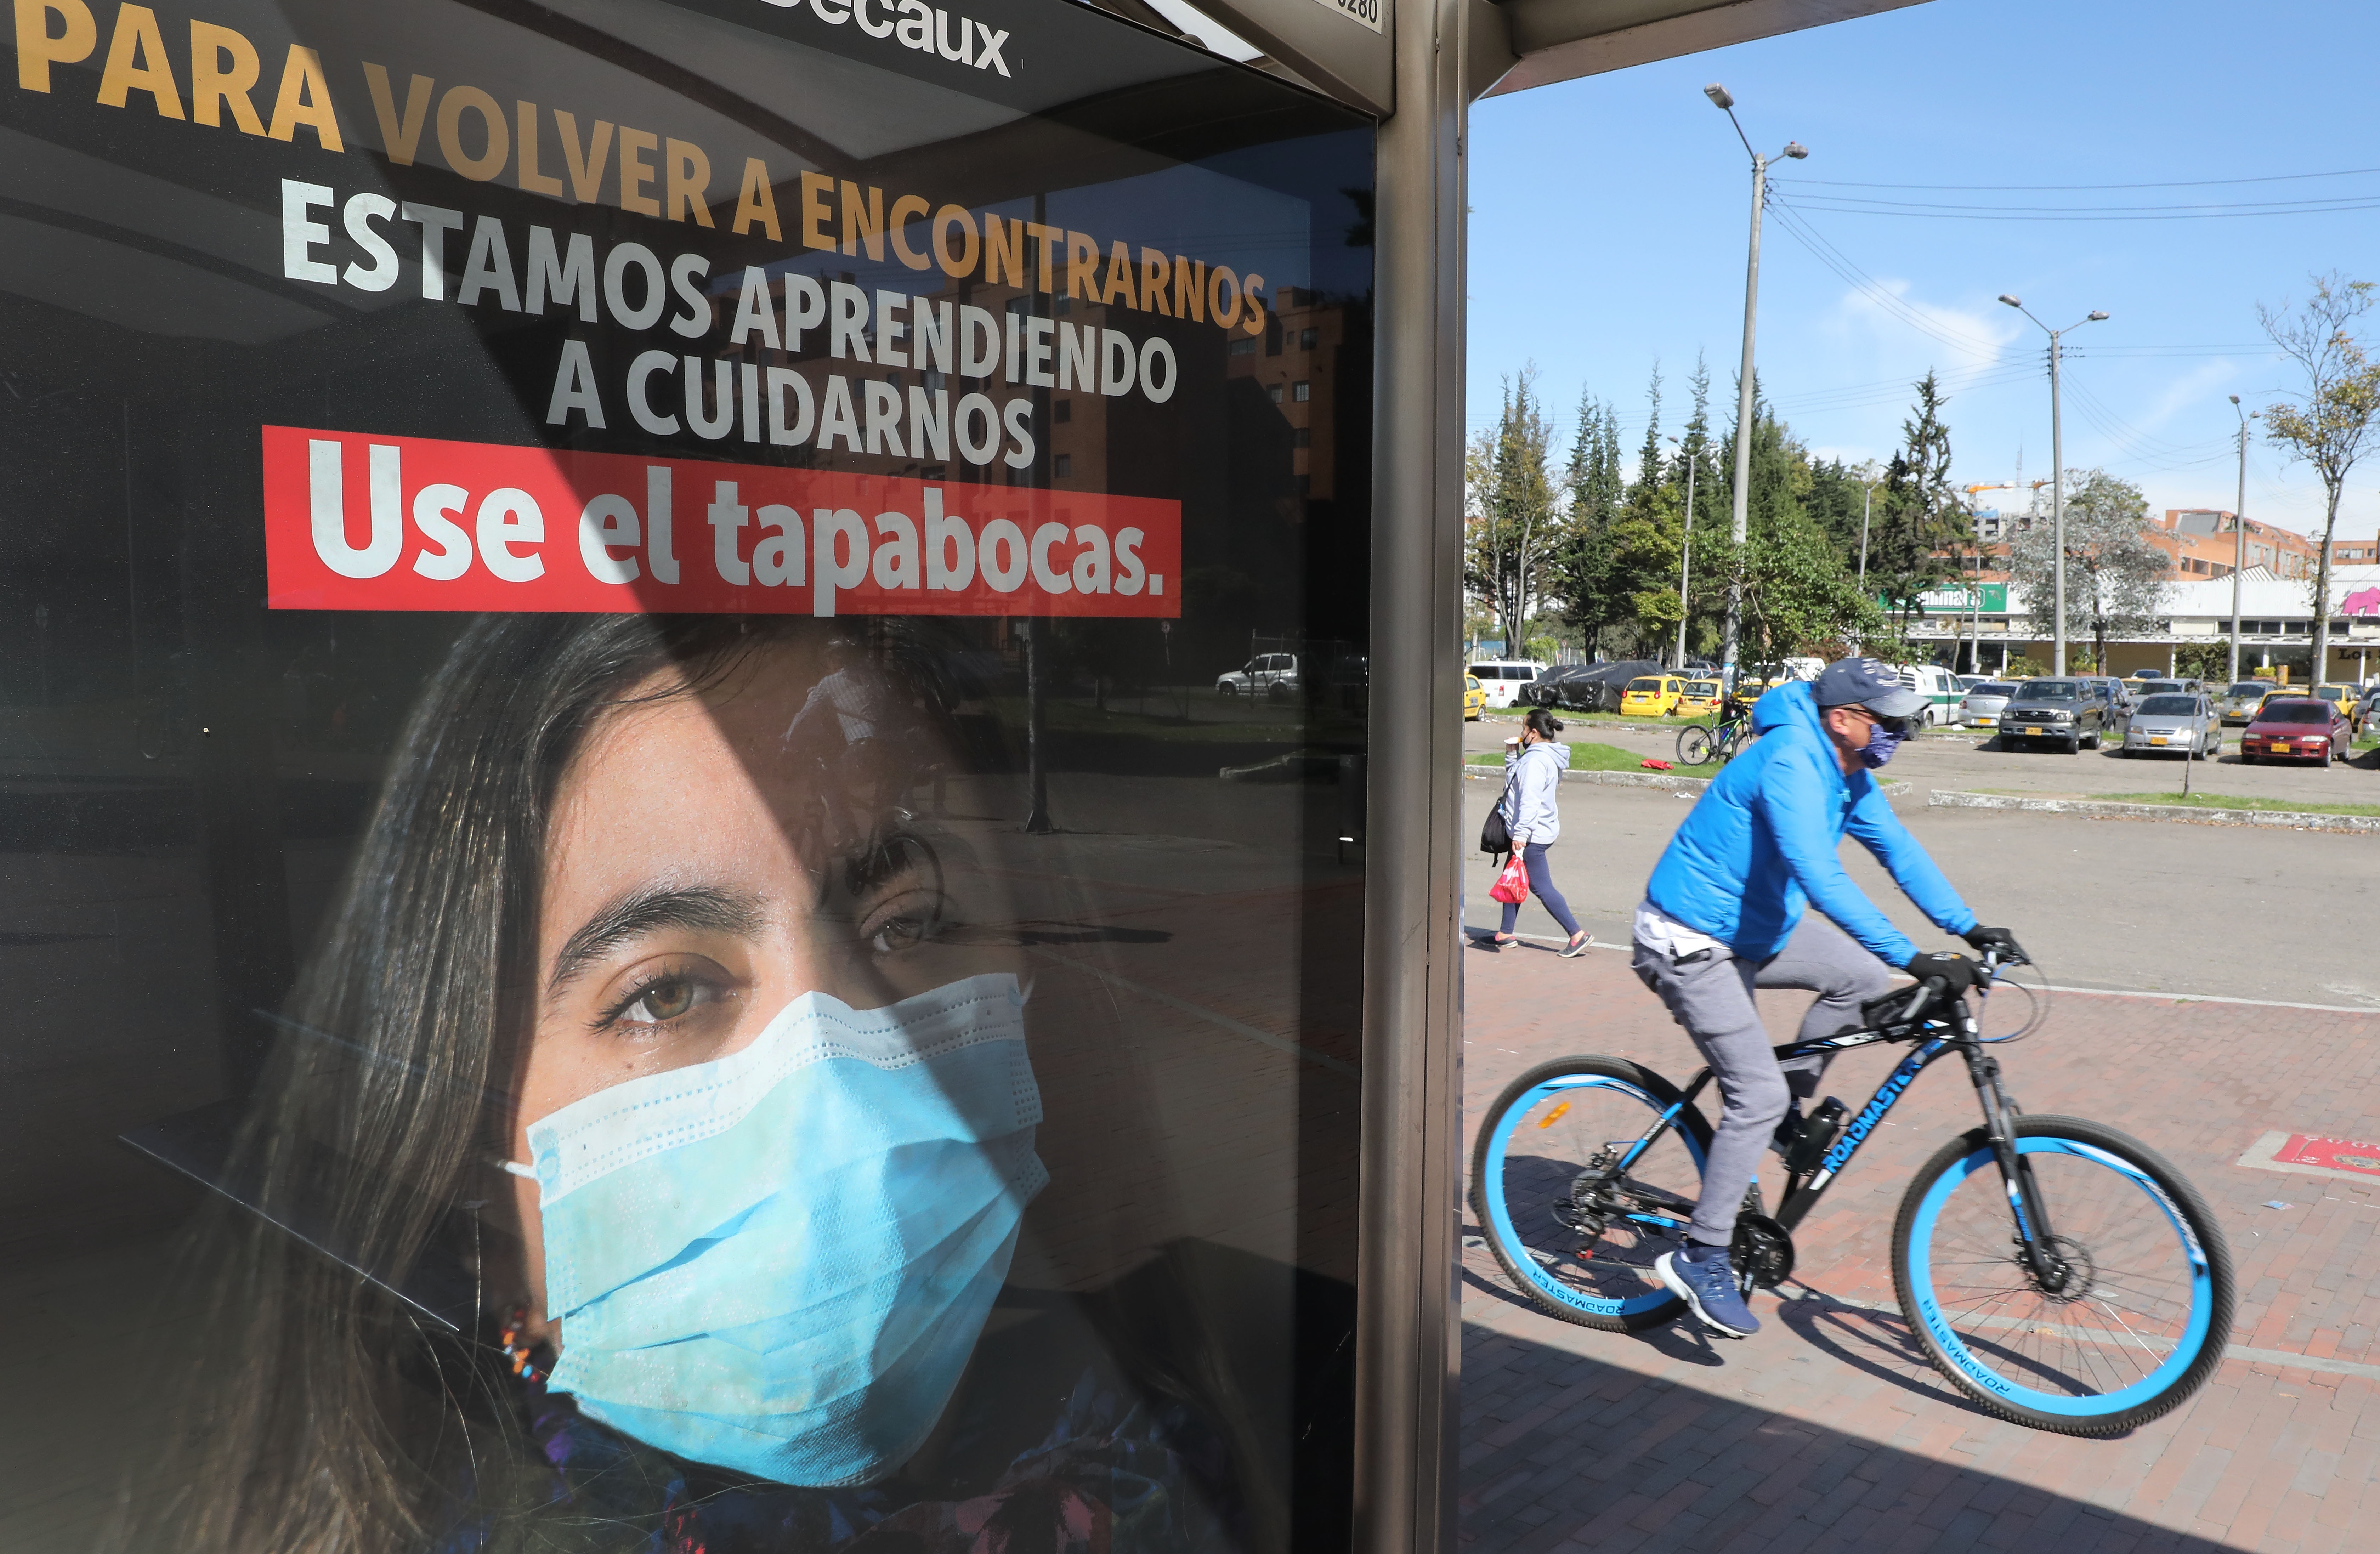 Un hombre circula en bicicleta junto a un anuncio que fomenta el uso del tapabocas, en Bogotá (Colombia). EFE/ Carlos Ortega/Archivo
